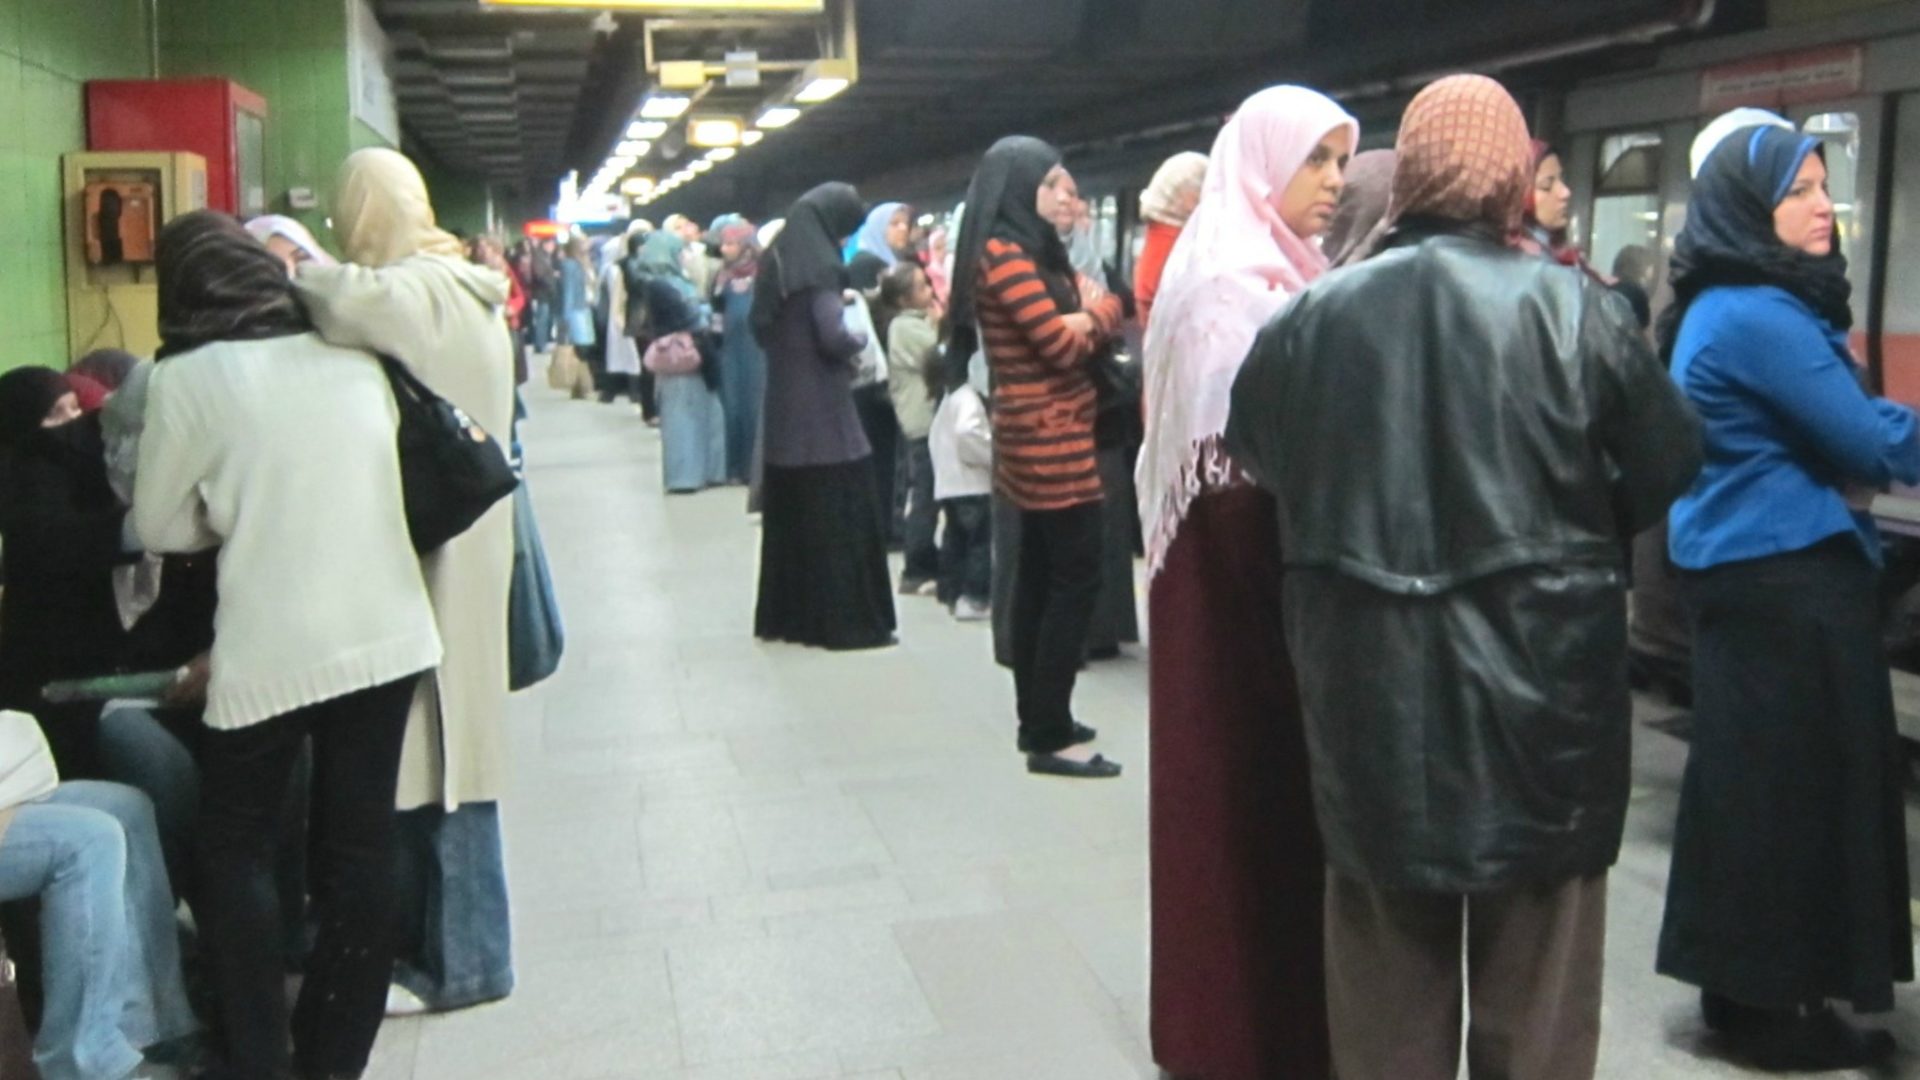 Le métro du Caire transporte quotidiennement 5 millions de voyageurs (Photo:Melissa Wall/Flickr/CC BY-NC 2.0)